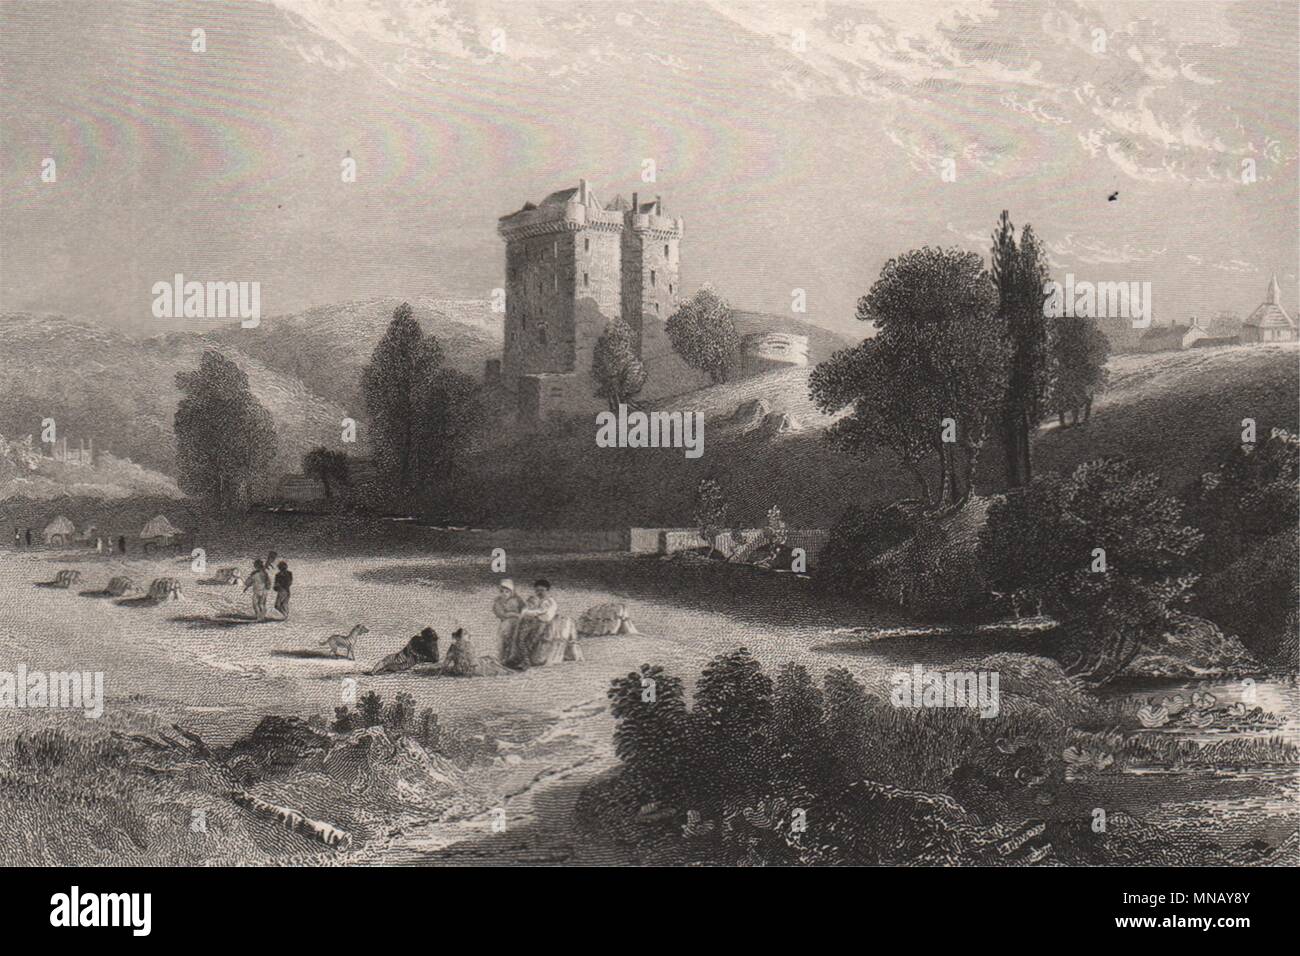 Borthwick Castle. Schottland 1845 alte antike vintage Bild drucken Stockfoto